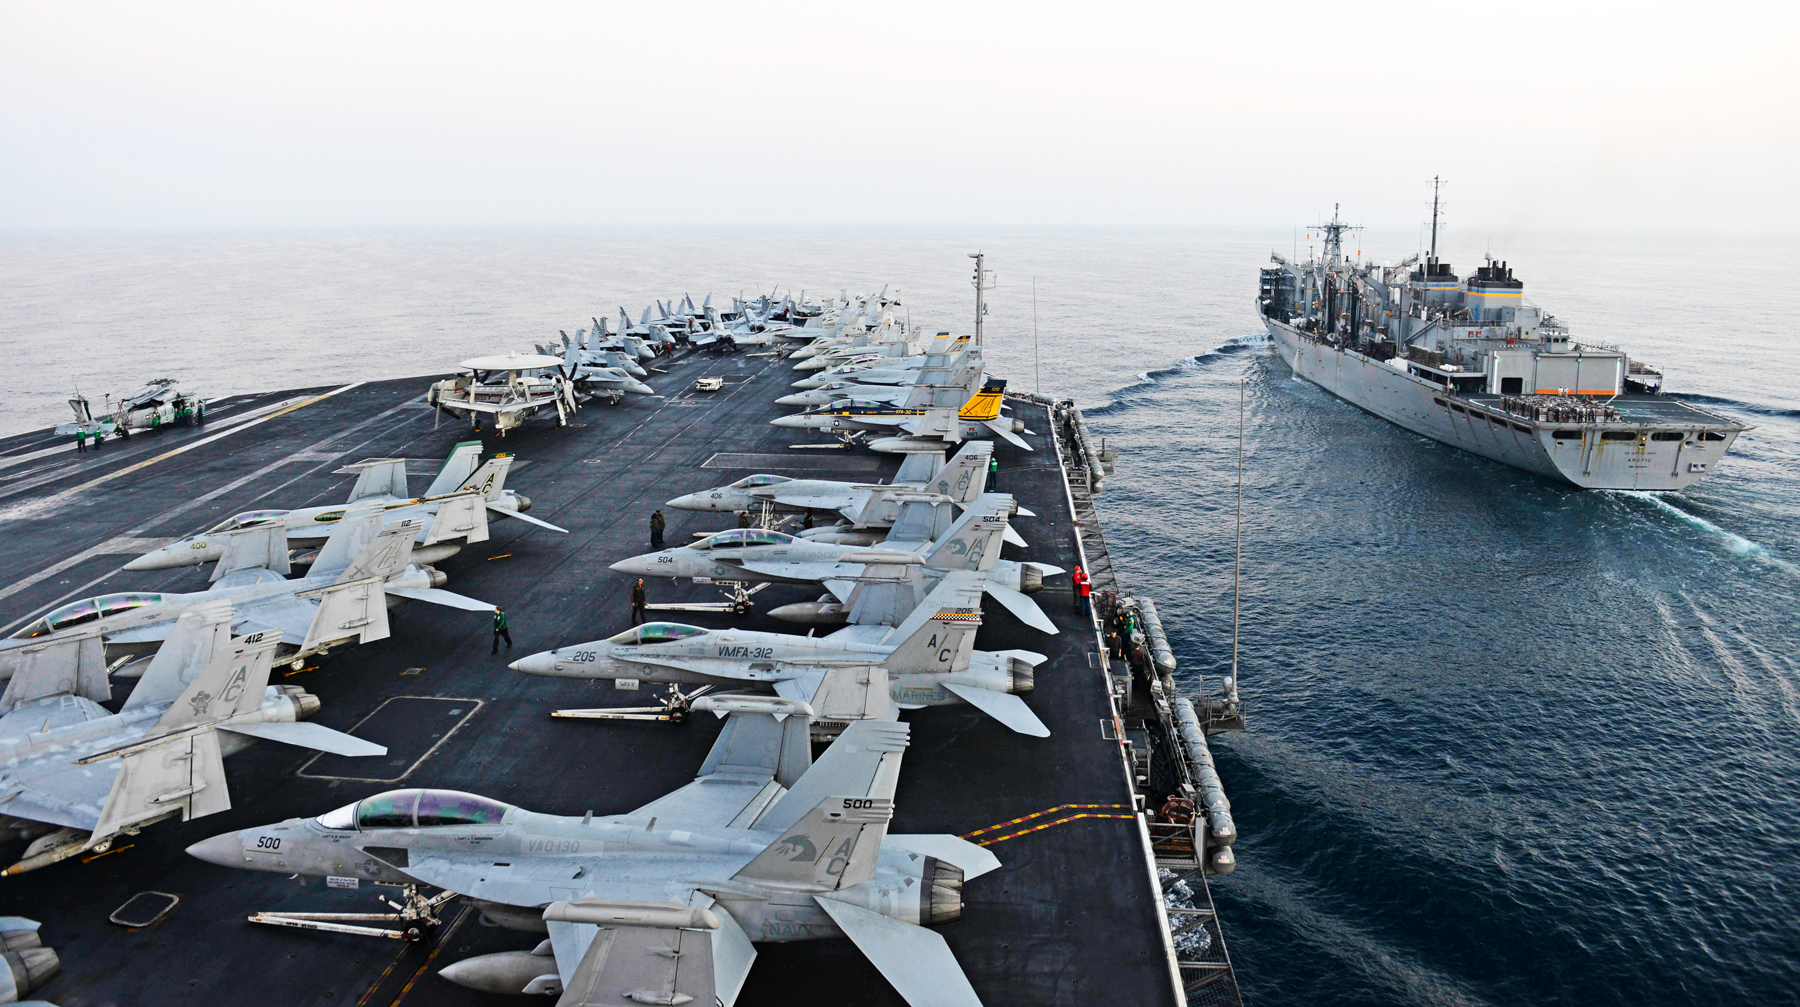 Какая техника и корабли есть у сторон в регионе и каким будет очередной раунд «морского боя» для стран-участниц Фото: © flickr.com/U.S. Naval Forces Central Command